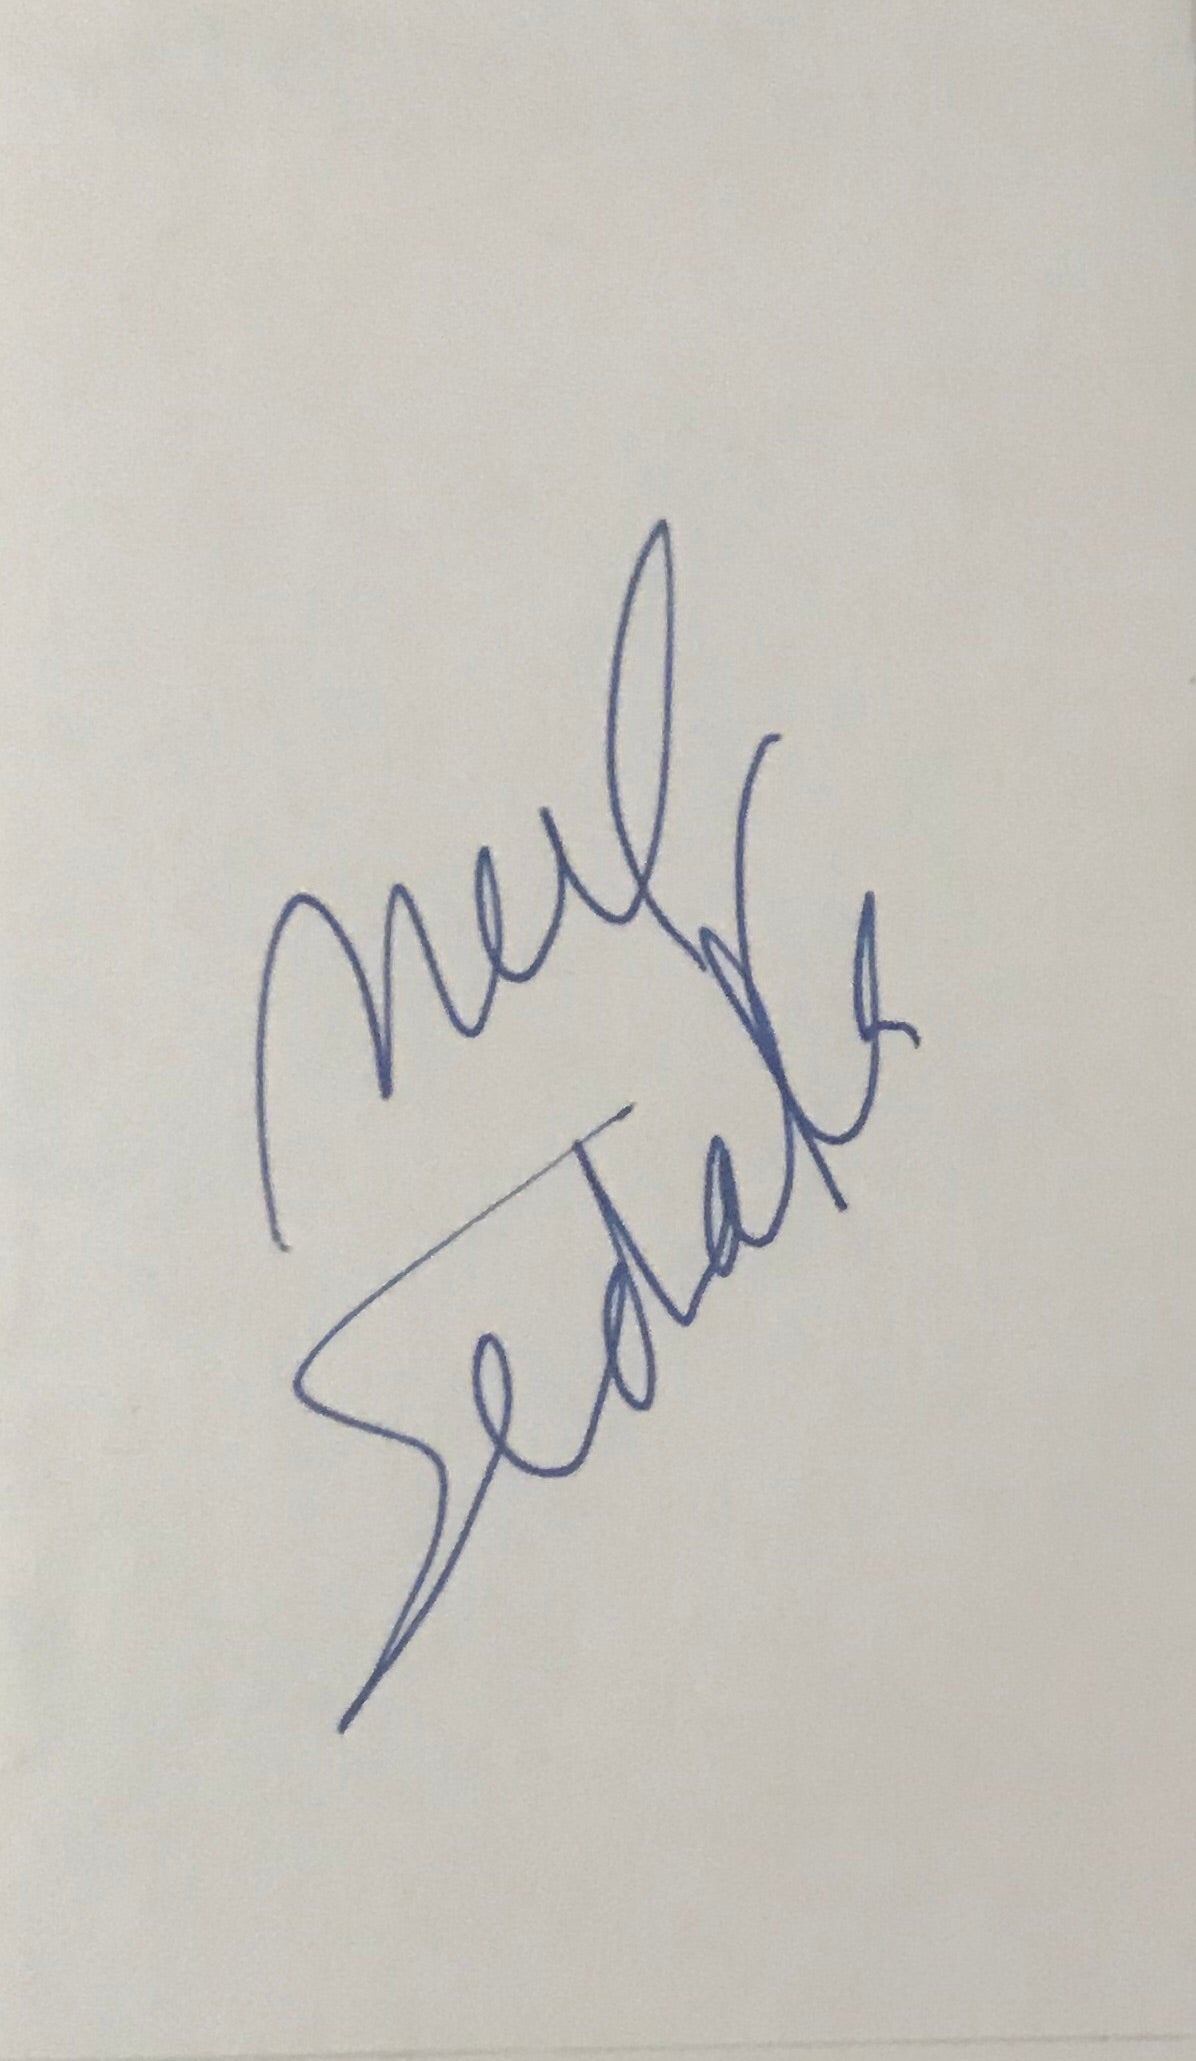 Neil Sedaka - Singer - Songwriter - Producer - Autographed Card